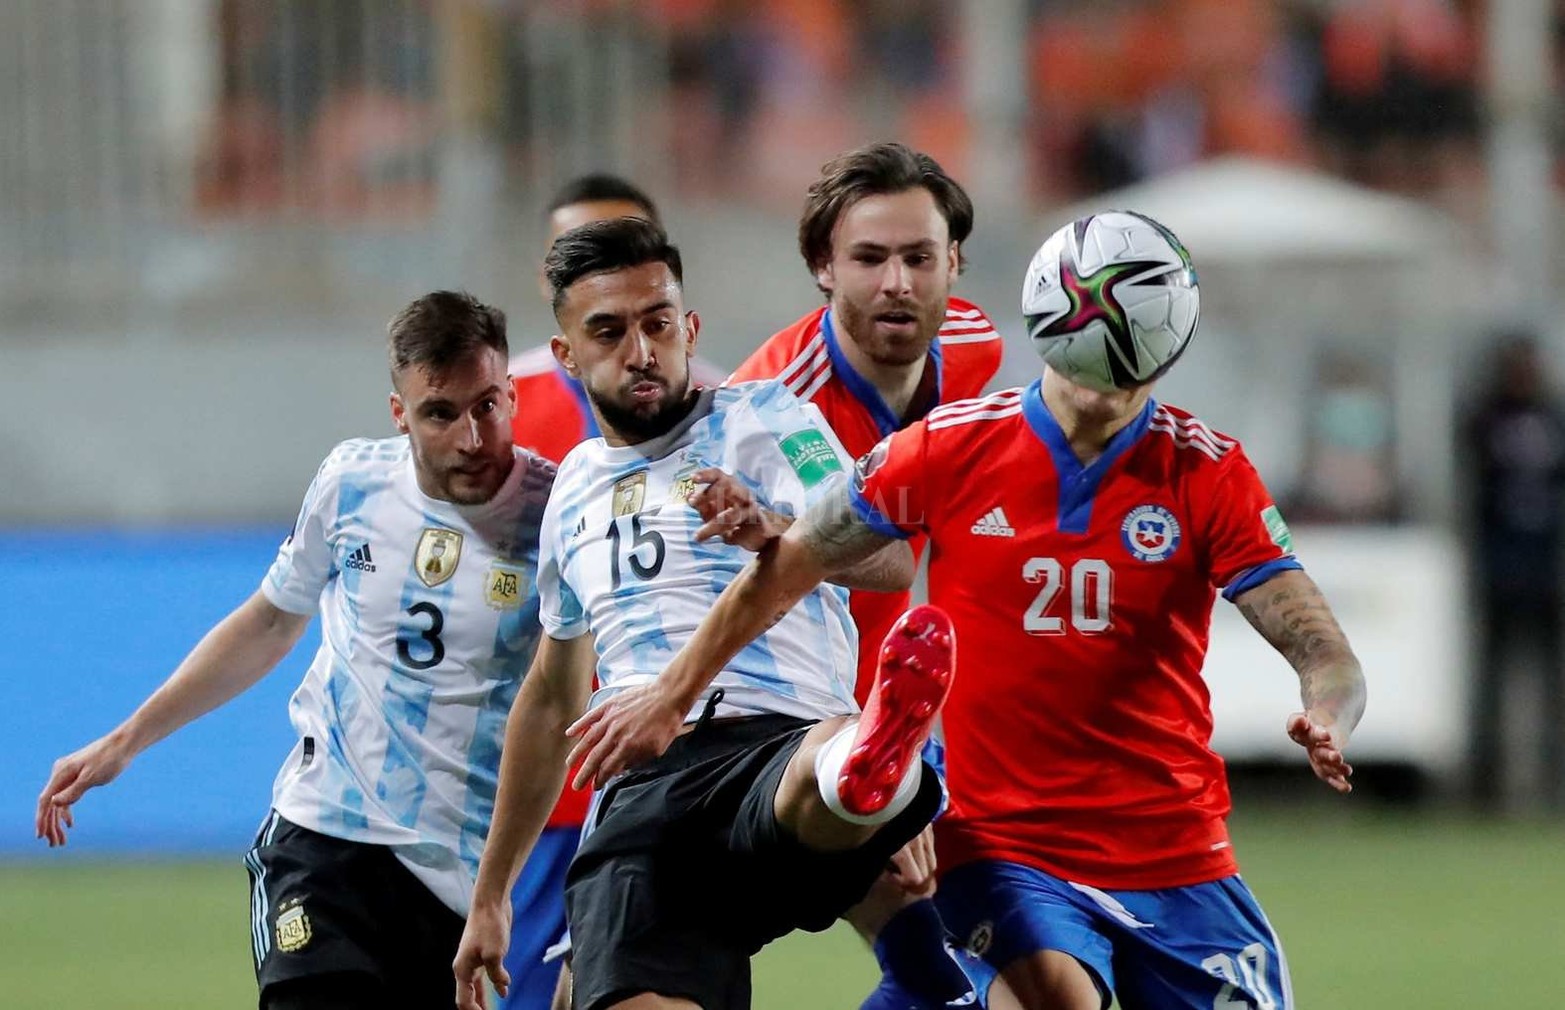 Por las eliminatoria para ingresar al Mundial de fútbol, Argentina venció 2 a 1 a Chile. Lleva 28 partidos sin perder.